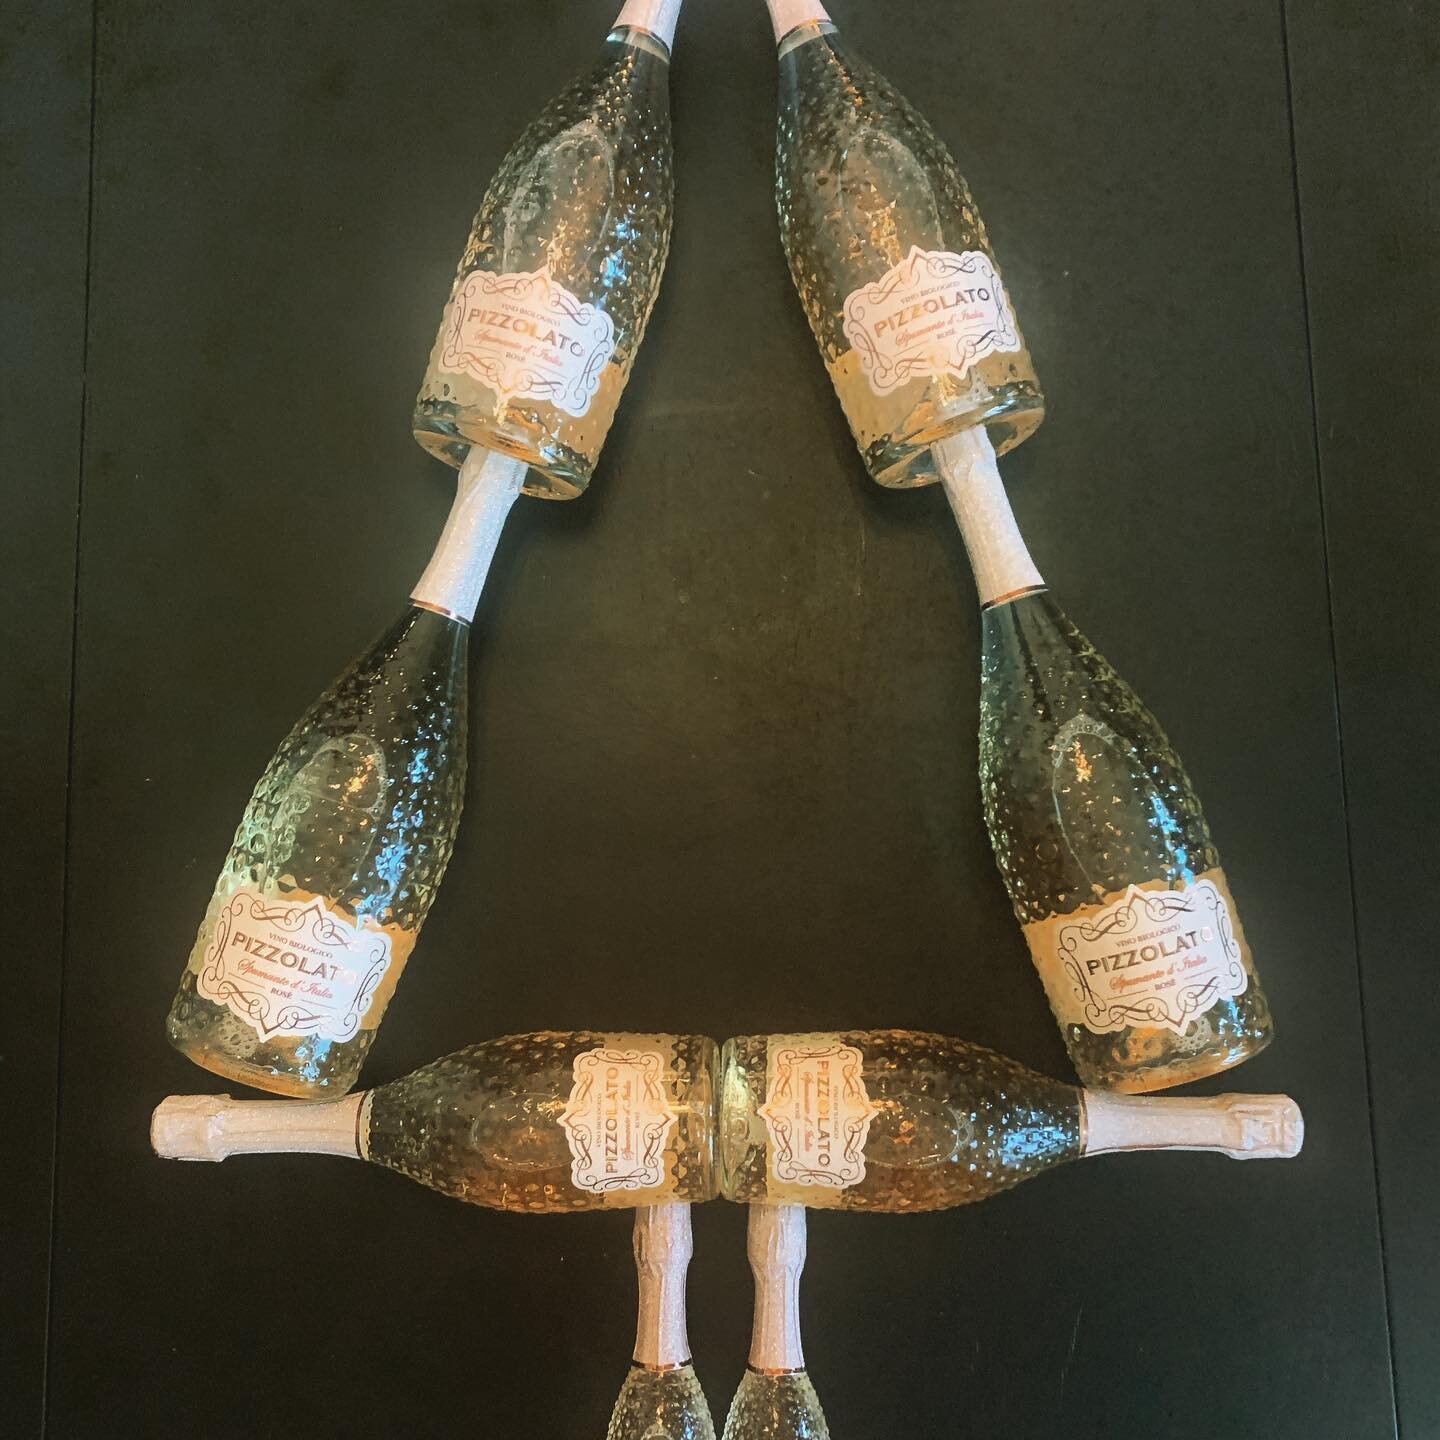 Heerlijke Italiaanse Bio rosé bubbels in een hele stijlvolle fles, in 0,2/0,75/1,5 liter.
Ideaal om je kerstdiner mee te beginnen, het jaar af te sluiten of gewoon zo maar! Vanaf 6 fl (0,75lt) gratis bezorgd in Rotterdam, maar ook per post in de res